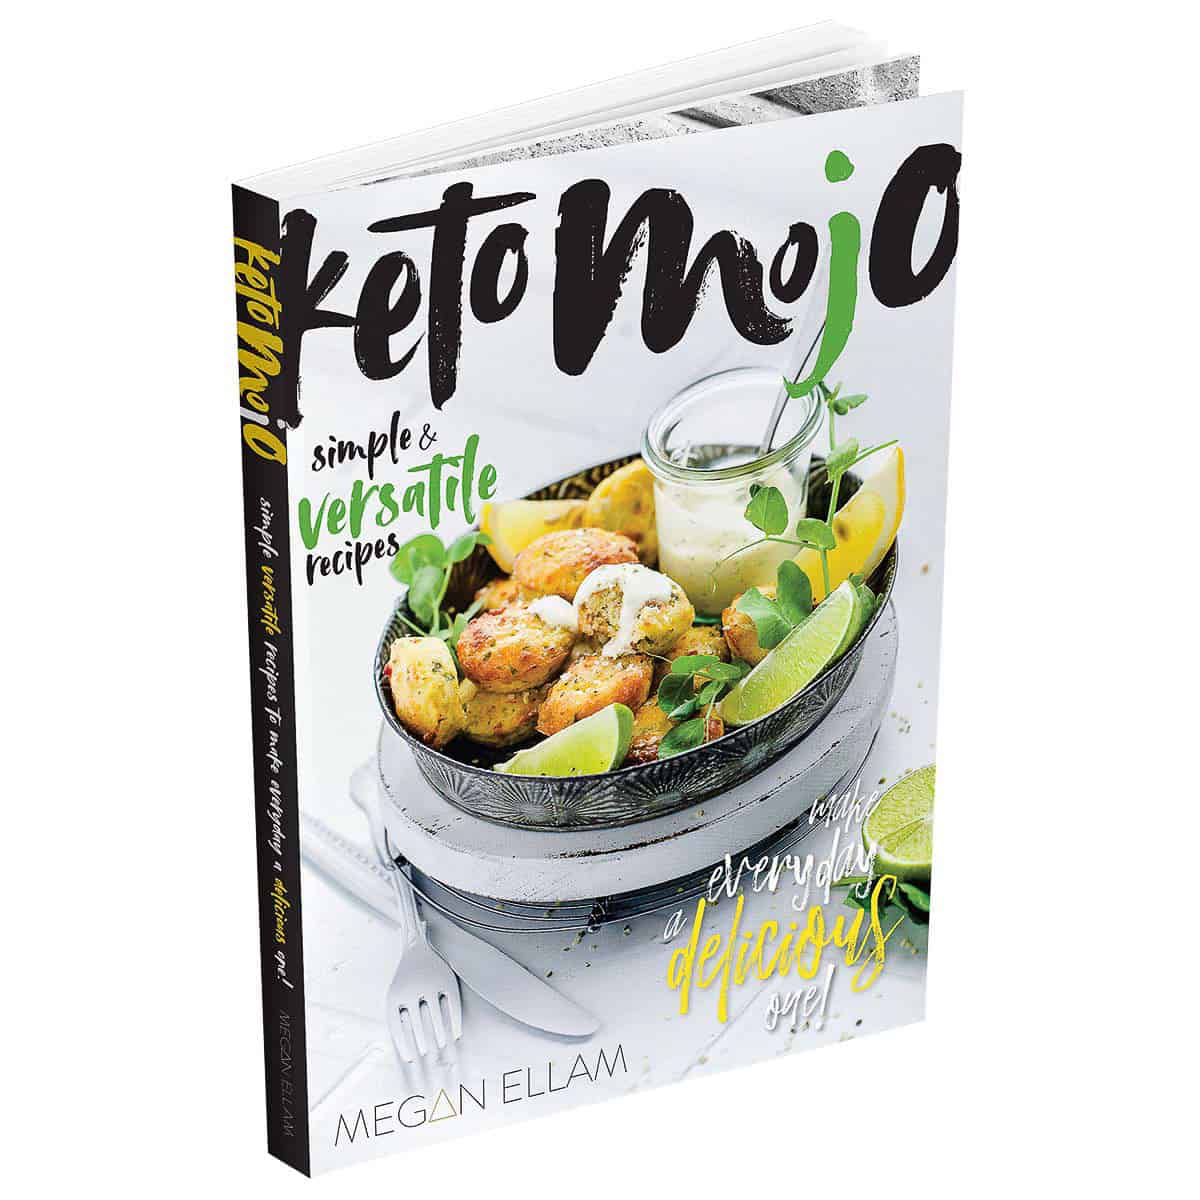 Keto Mojo Cookbook cover.